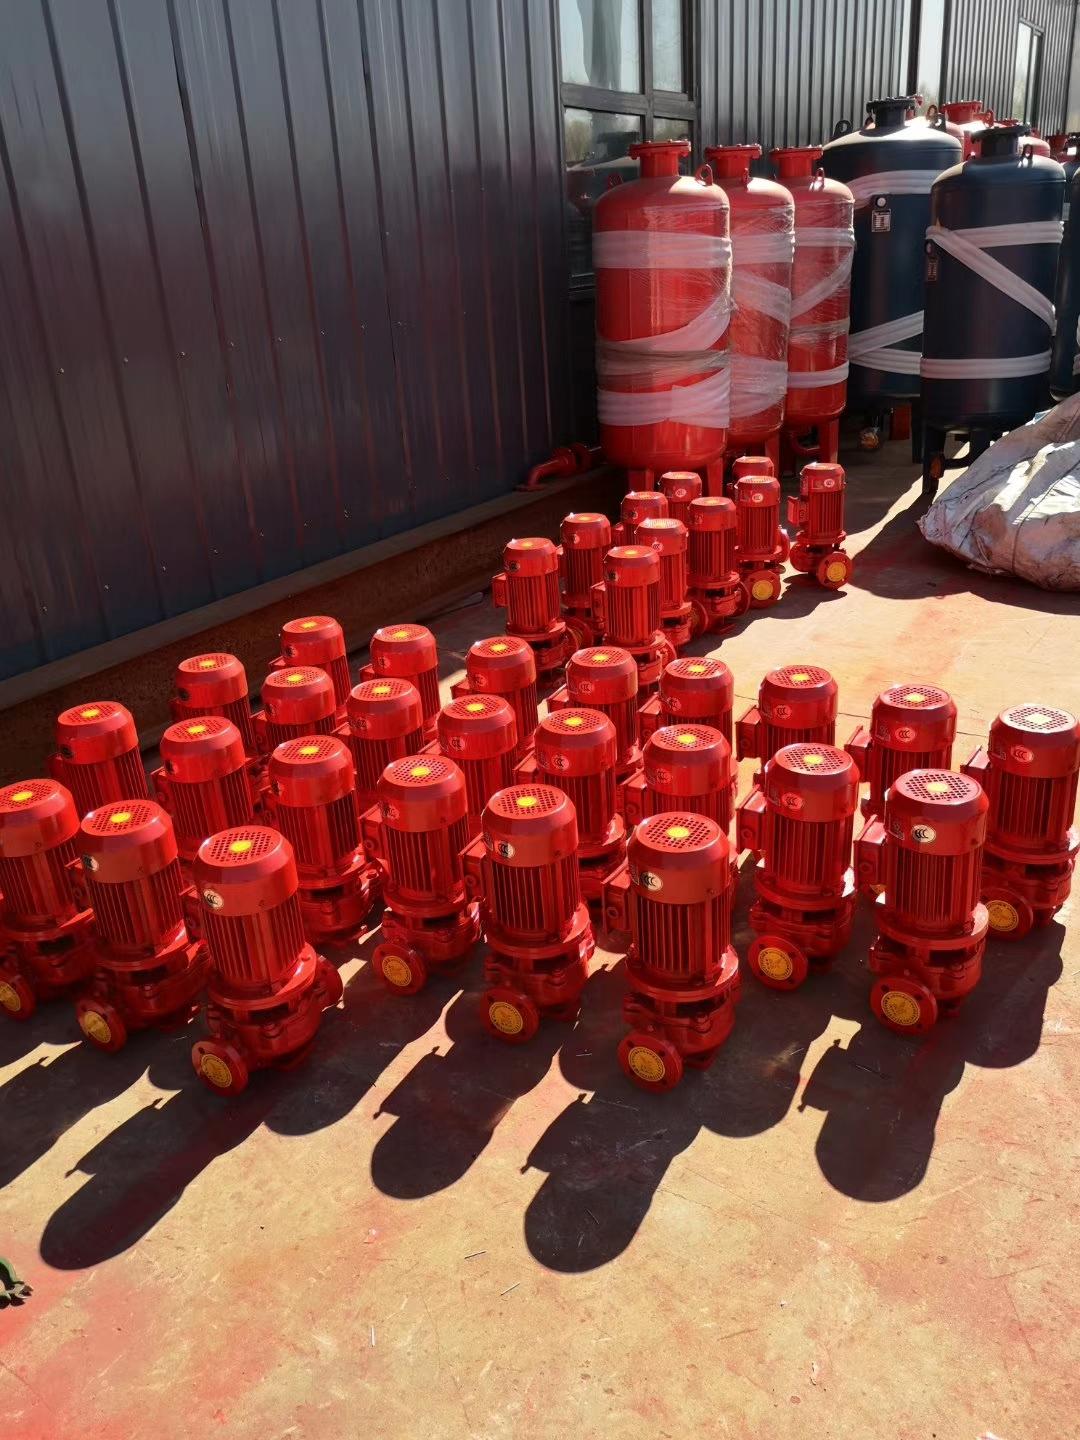 北京立式消防泵厂家XBD9.0/40GL消防泵厂家价格